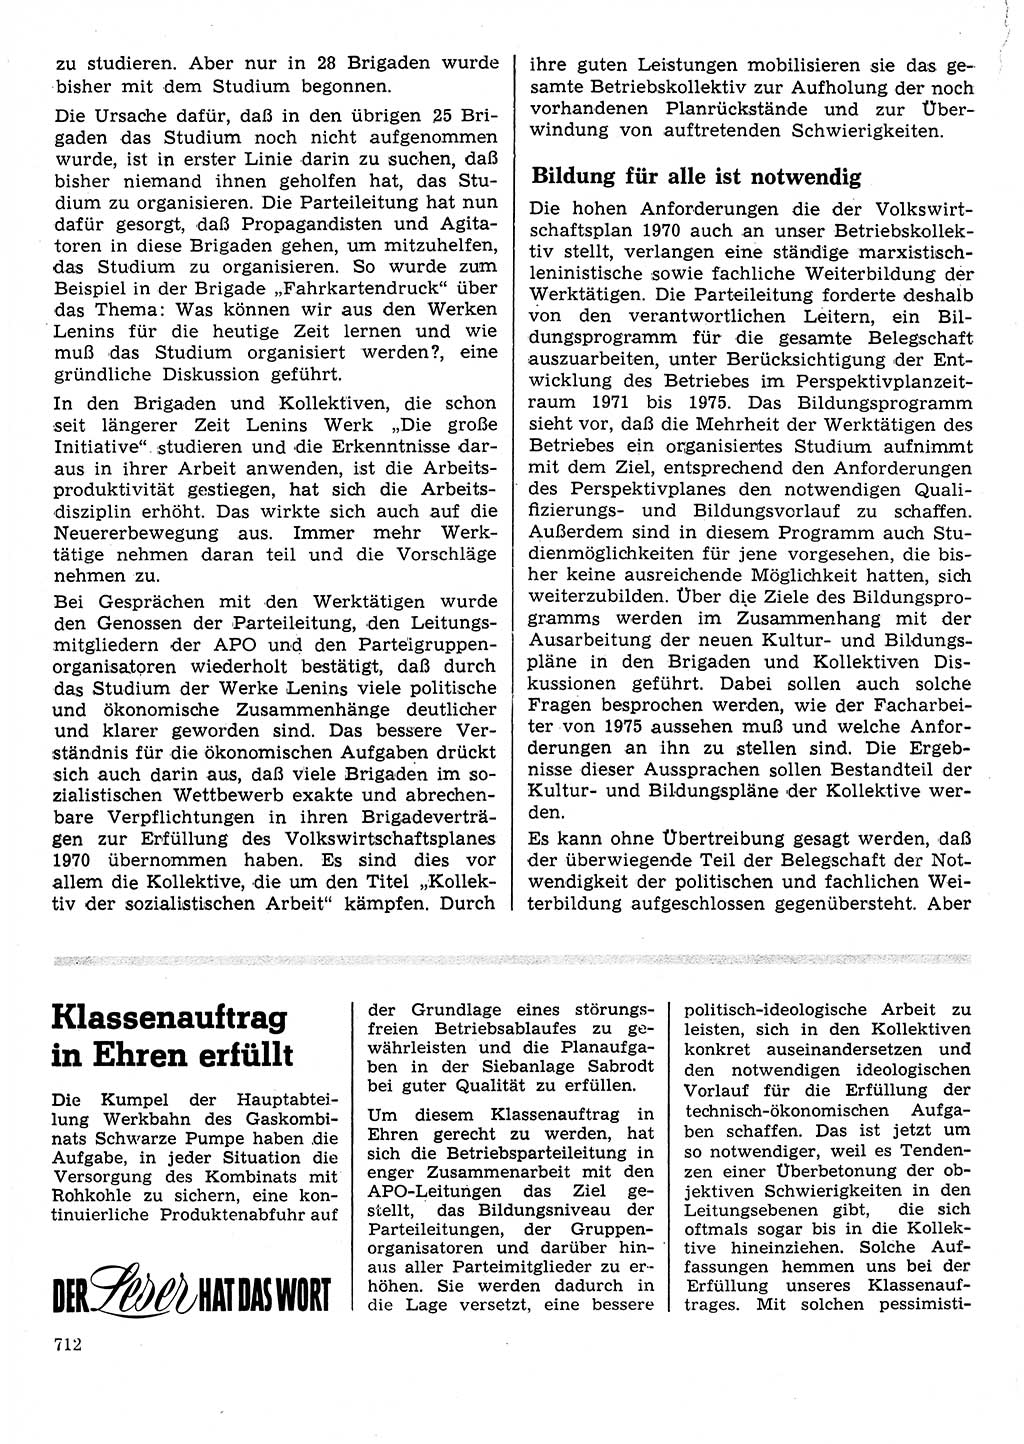 Neuer Weg (NW), Organ des Zentralkomitees (ZK) der SED (Sozialistische Einheitspartei Deutschlands) für Fragen des Parteilebens, 25. Jahrgang [Deutsche Demokratische Republik (DDR)] 1970, Seite 712 (NW ZK SED DDR 1970, S. 712)